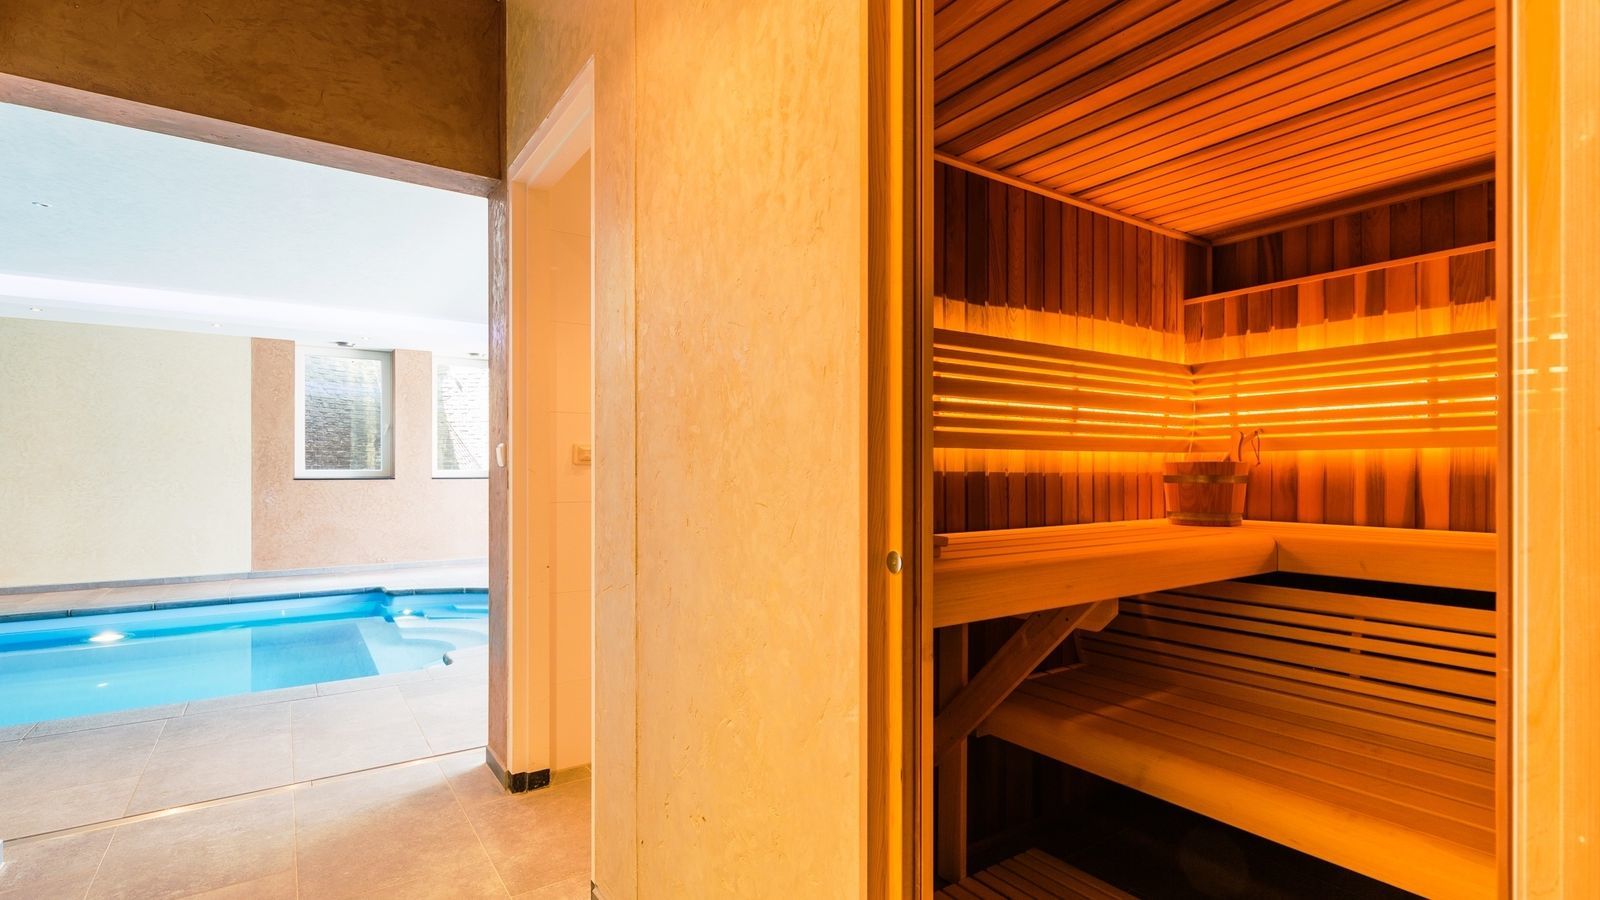 Villapparte-Special Villa's-luxe vakantiehuis voor 21 personen-binnen zwembad-sauna-groepsaccommodatie-Zuid Limburg-met sauna